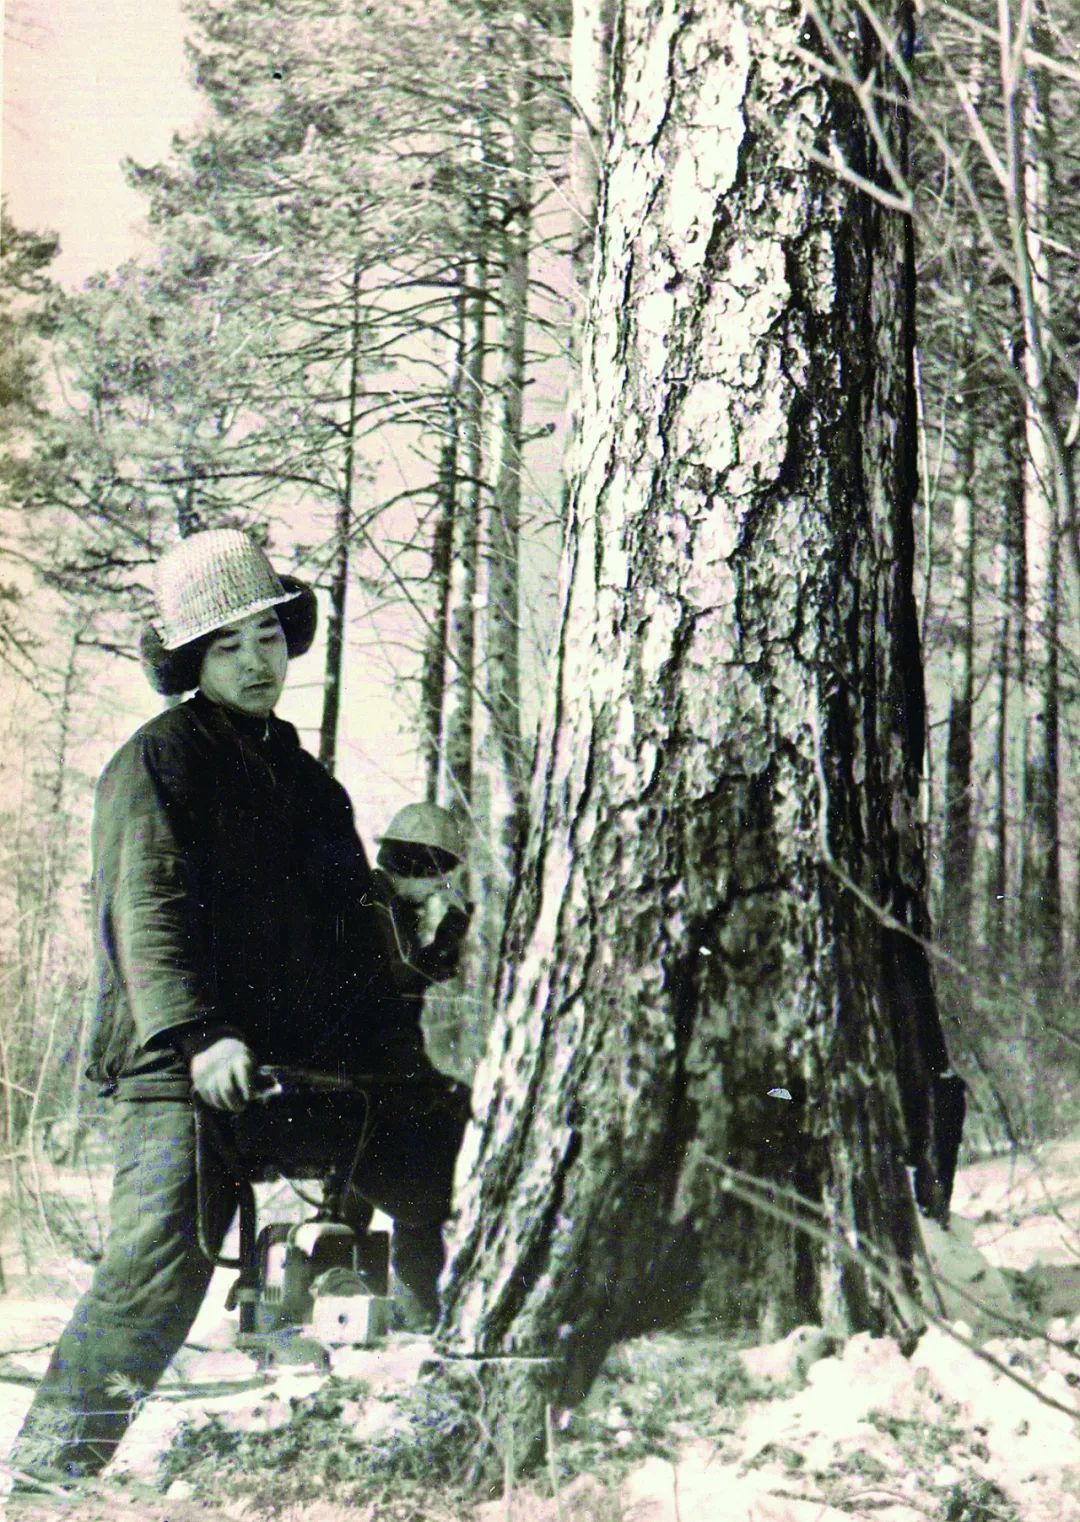 使用锯的伐木工人砍大树在秋天wea期间 库存图片. 图片 包括有 剪切, 本质, 手工, 盔甲, 链子 - 108781435